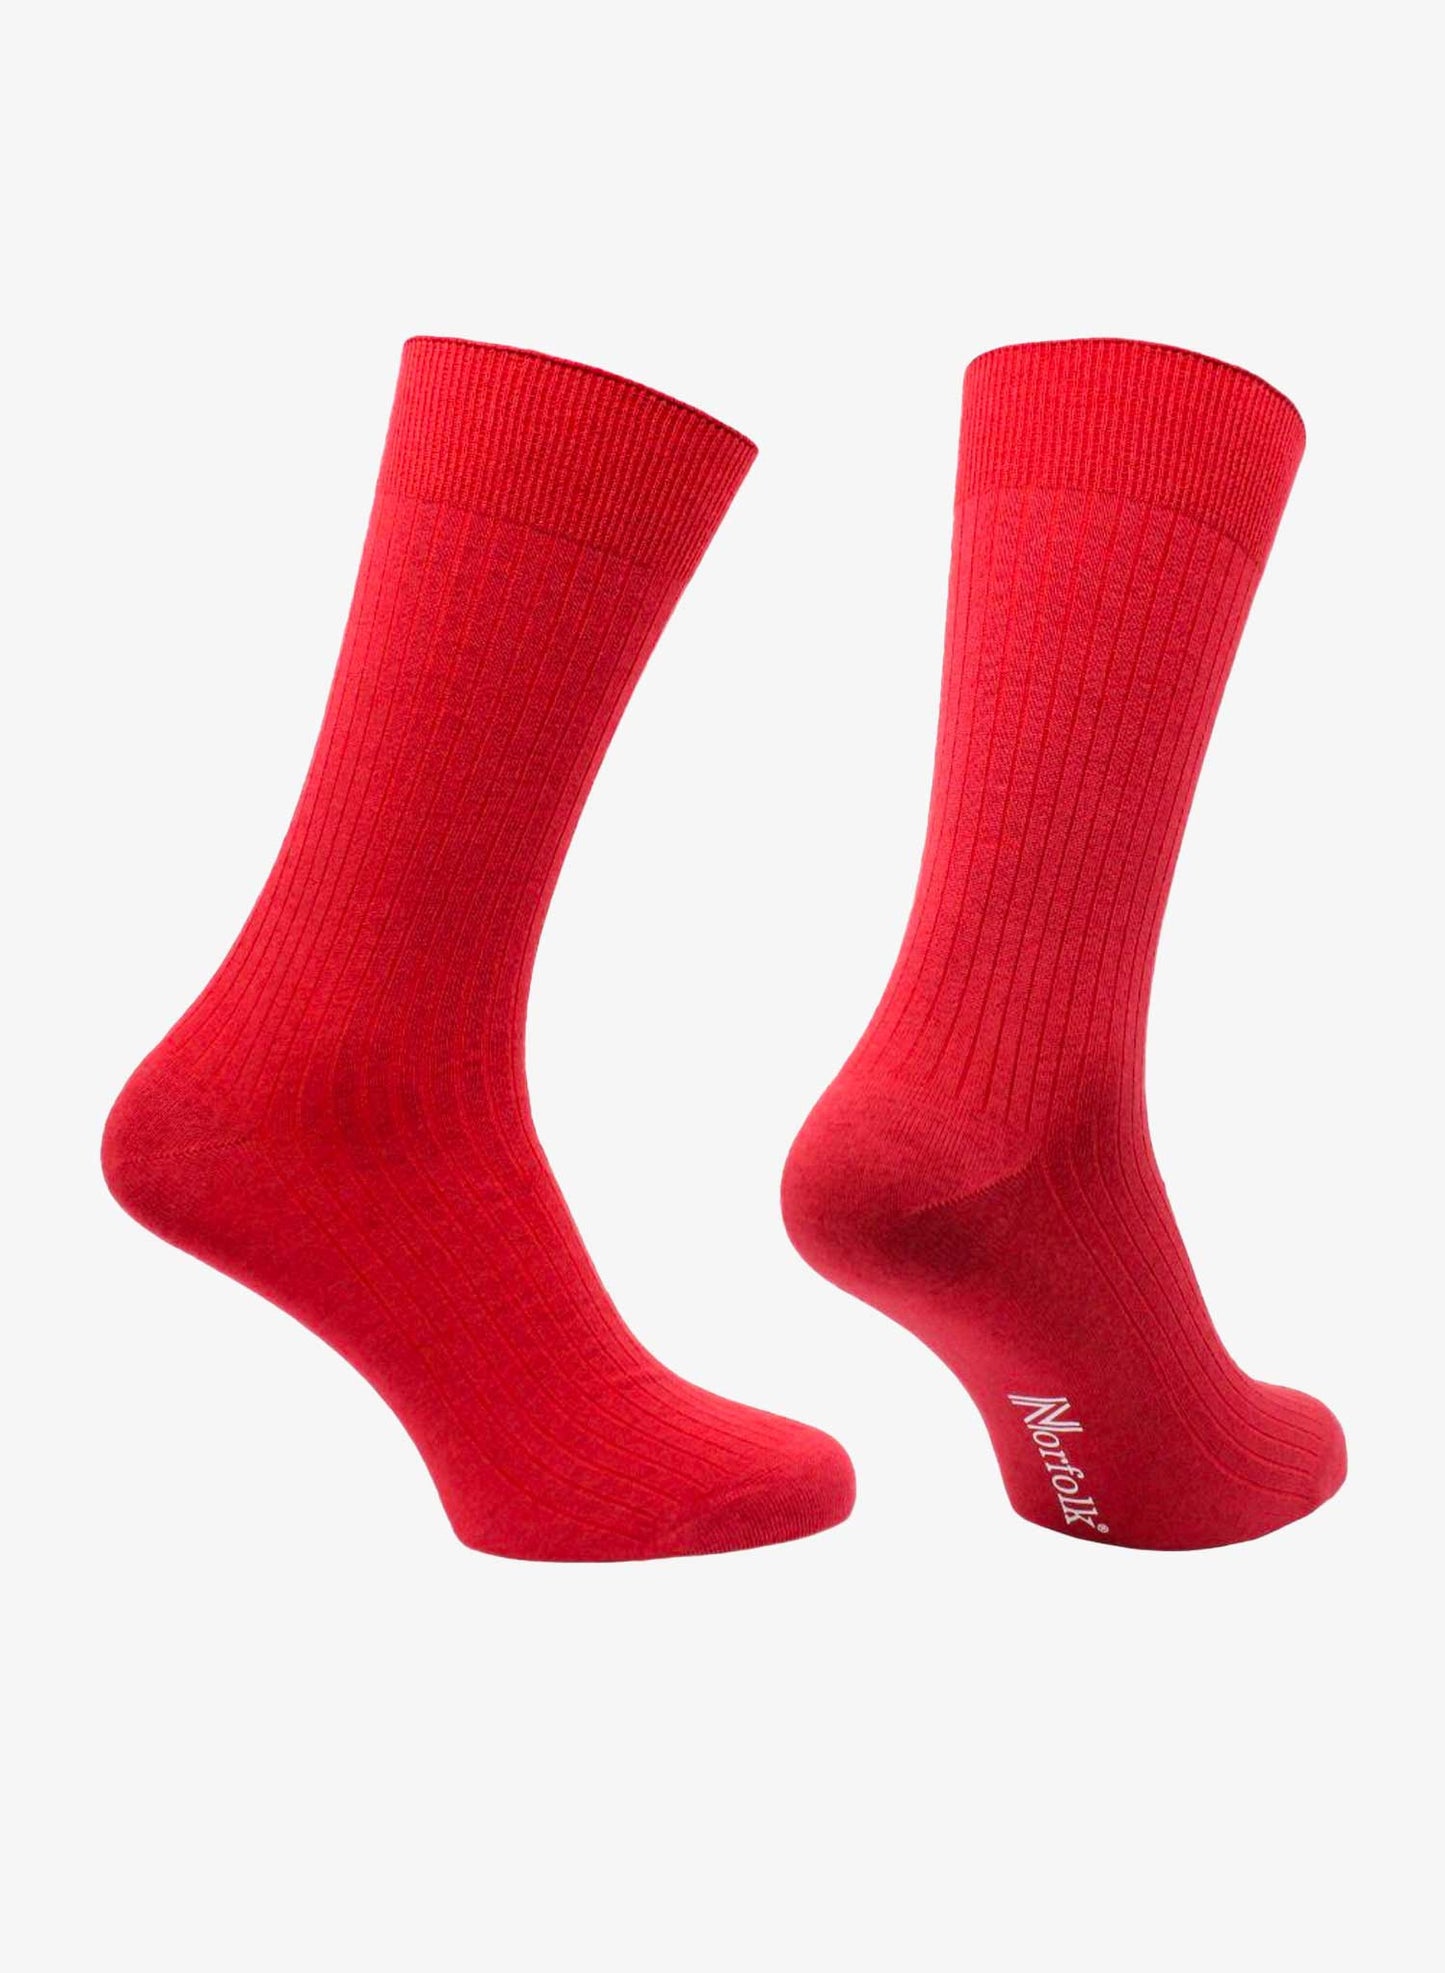 Norfolk Socks Monaco - Red